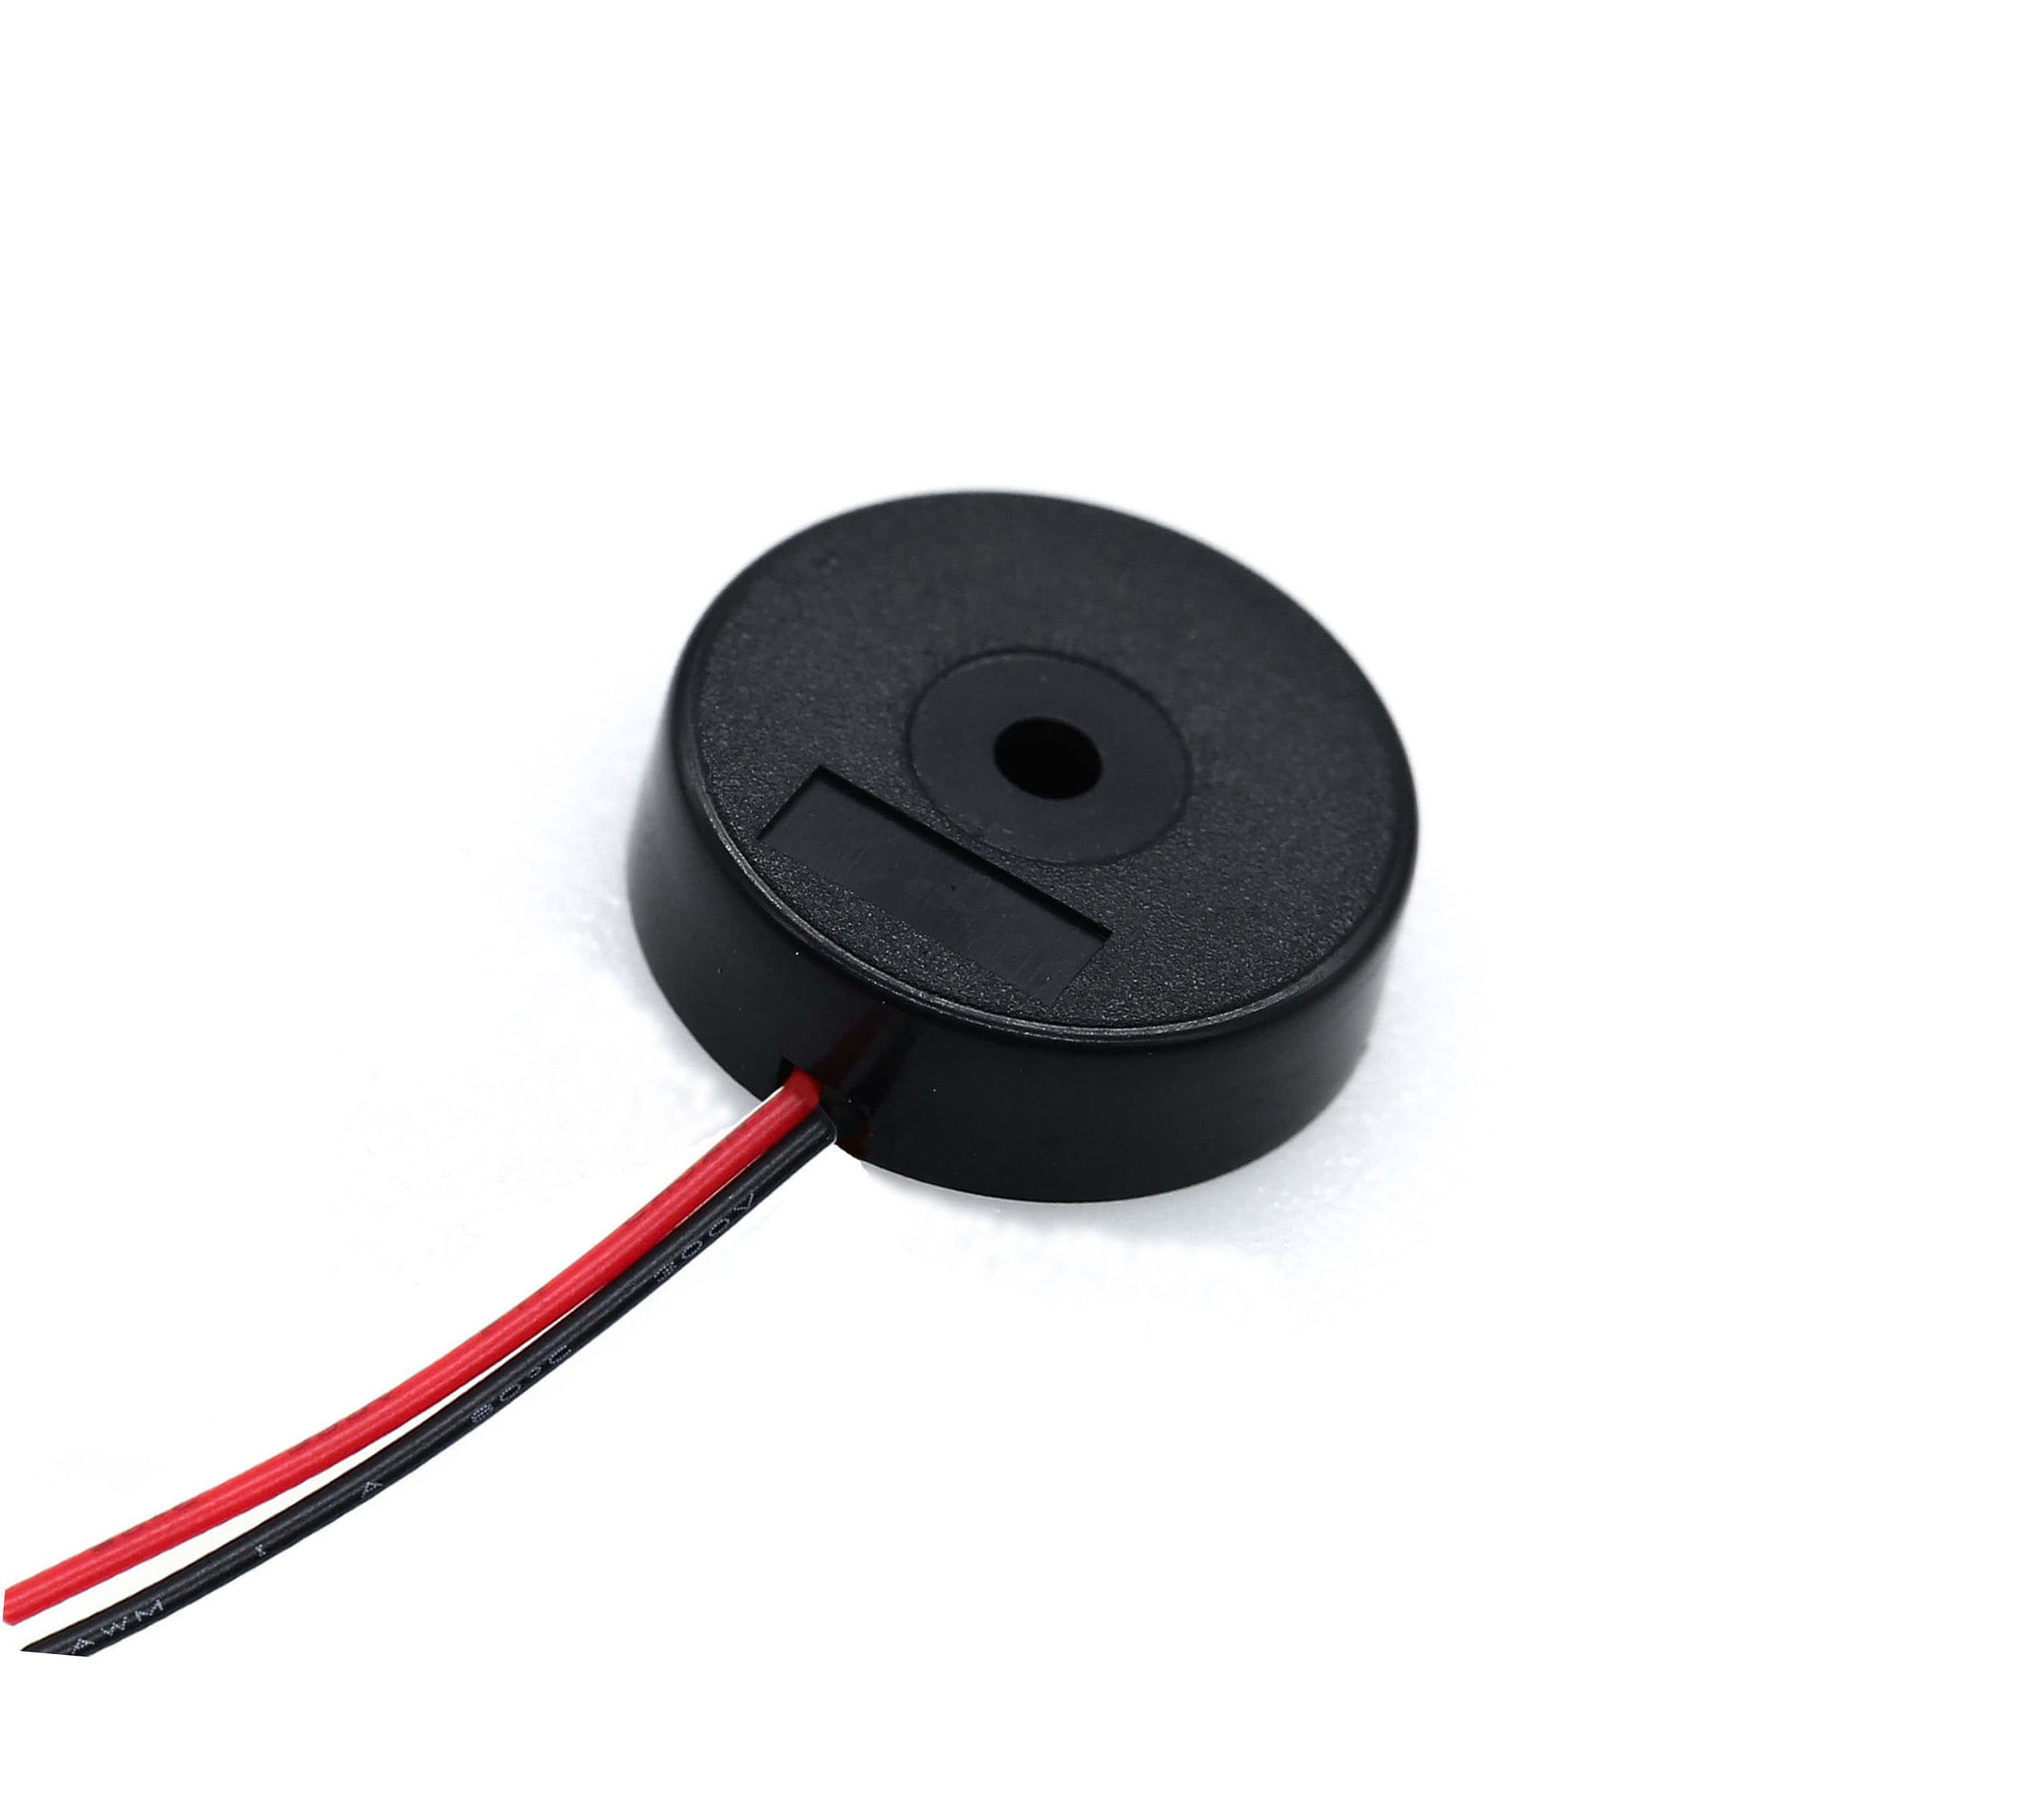 Cable conductor de zumbador piezoeléctrico pasivo de 14 mm para electrodomésticos